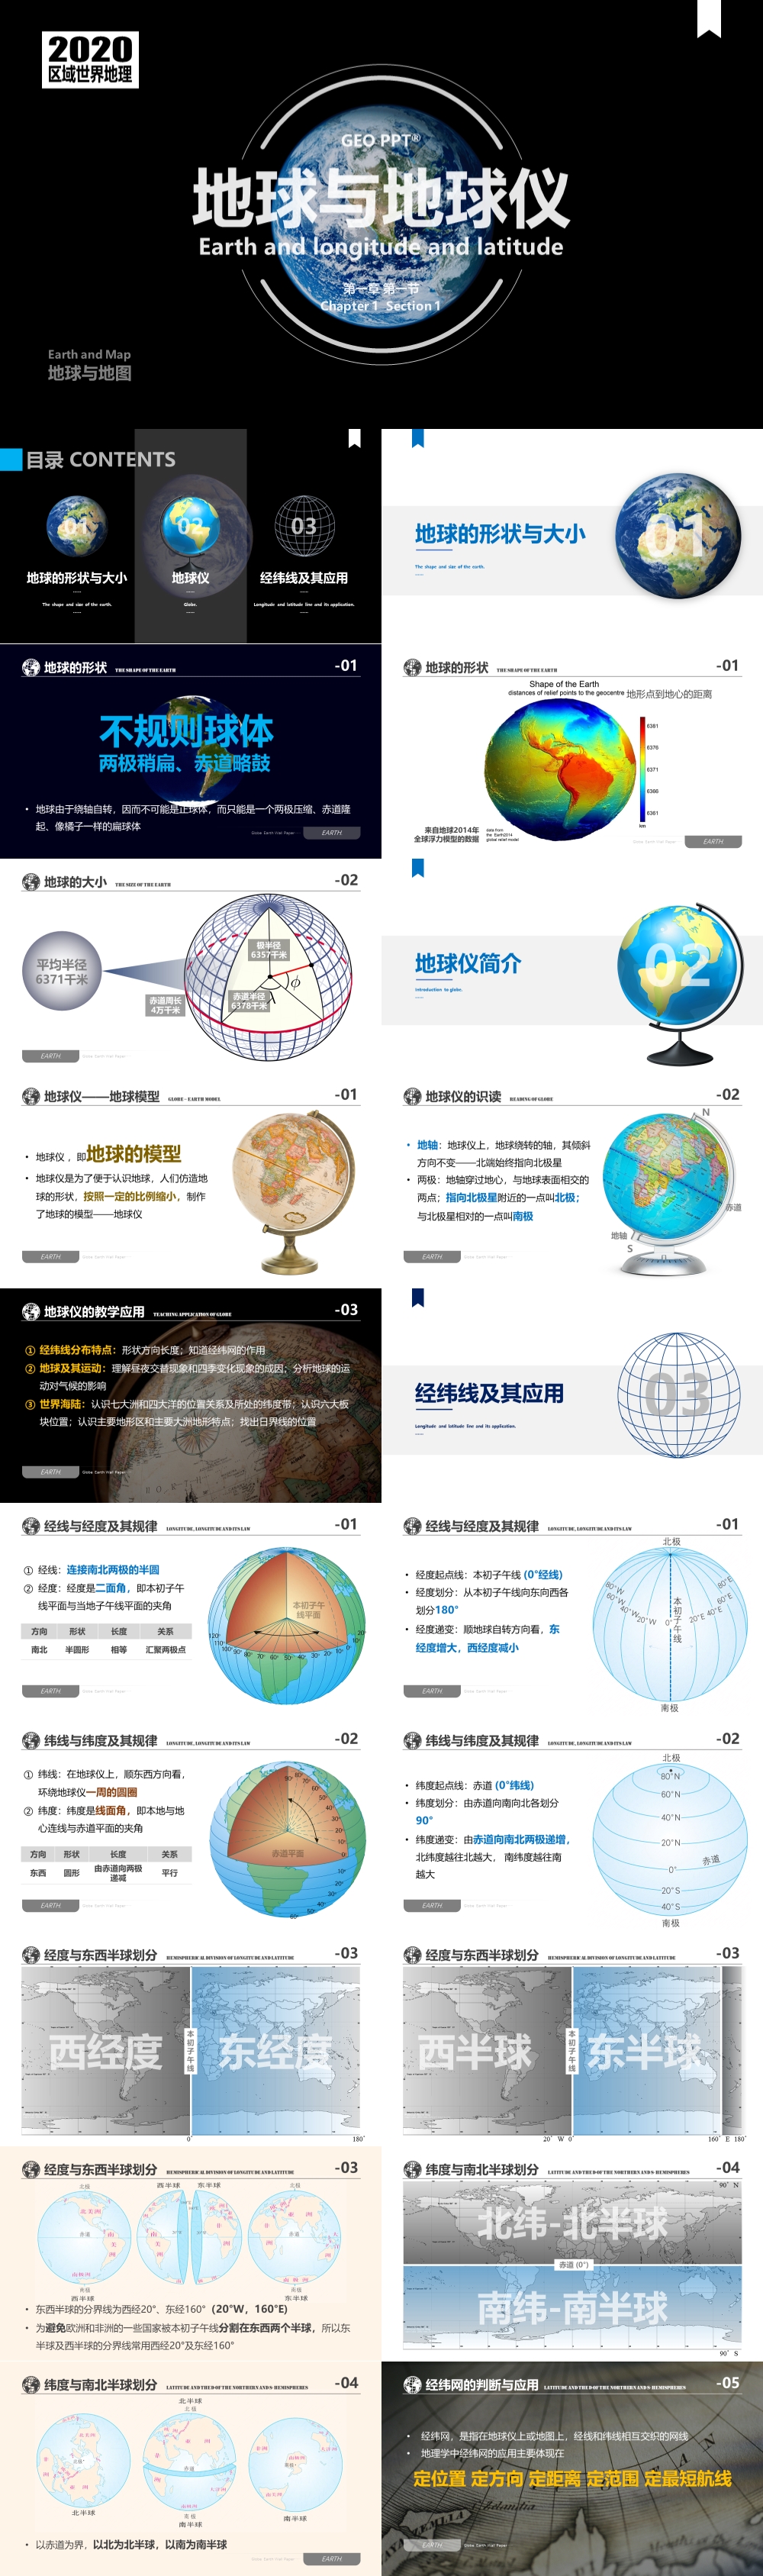 世界地理 第01讲 地球与地球仪 Earth L-latitude [2020版]-1000Px.jpg